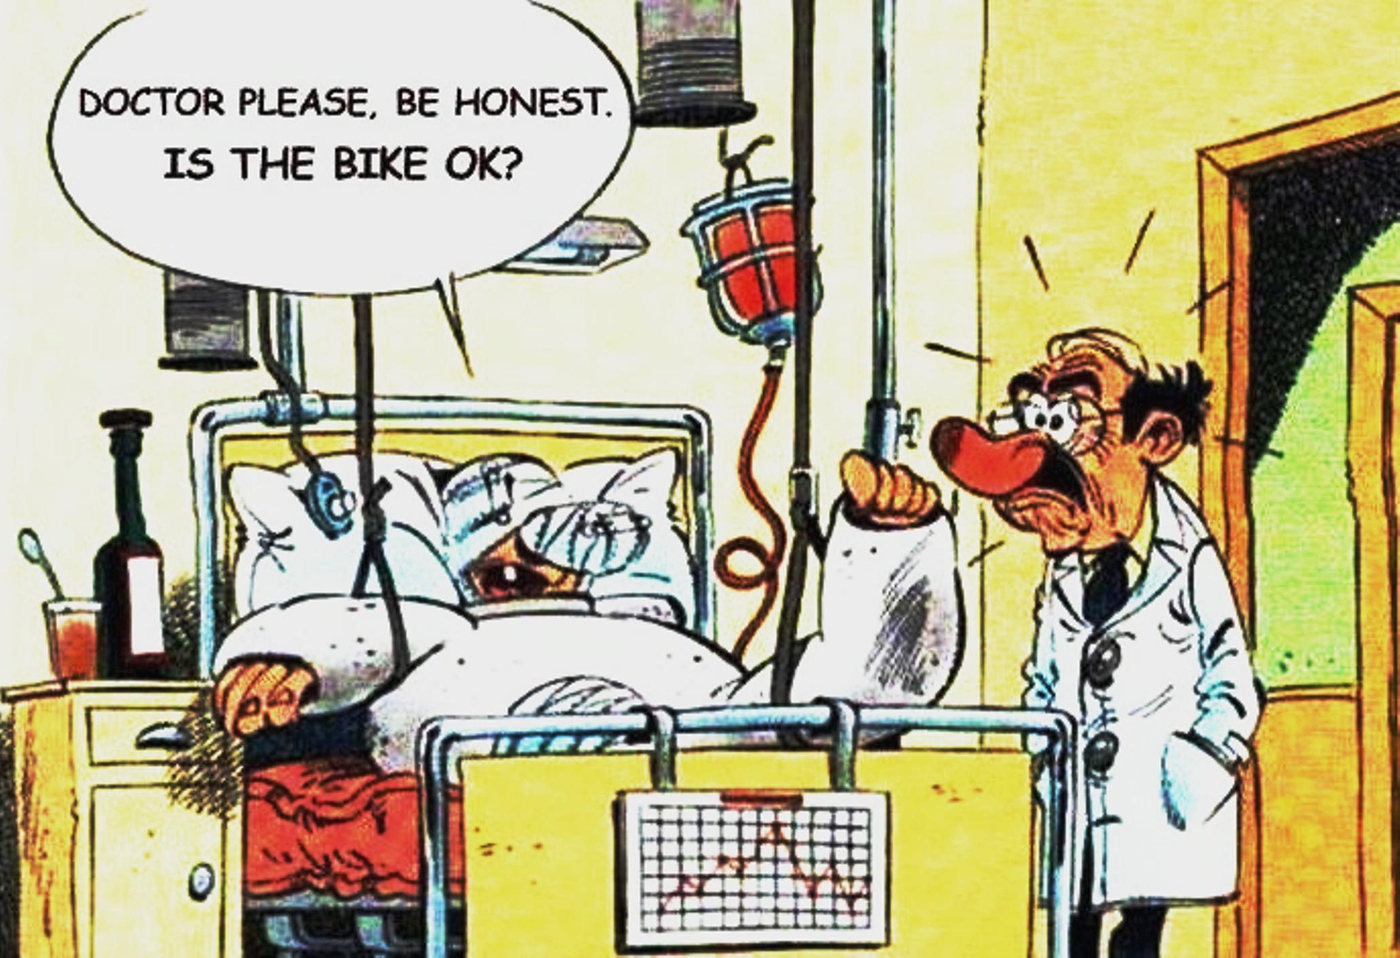 Is the bike OK?